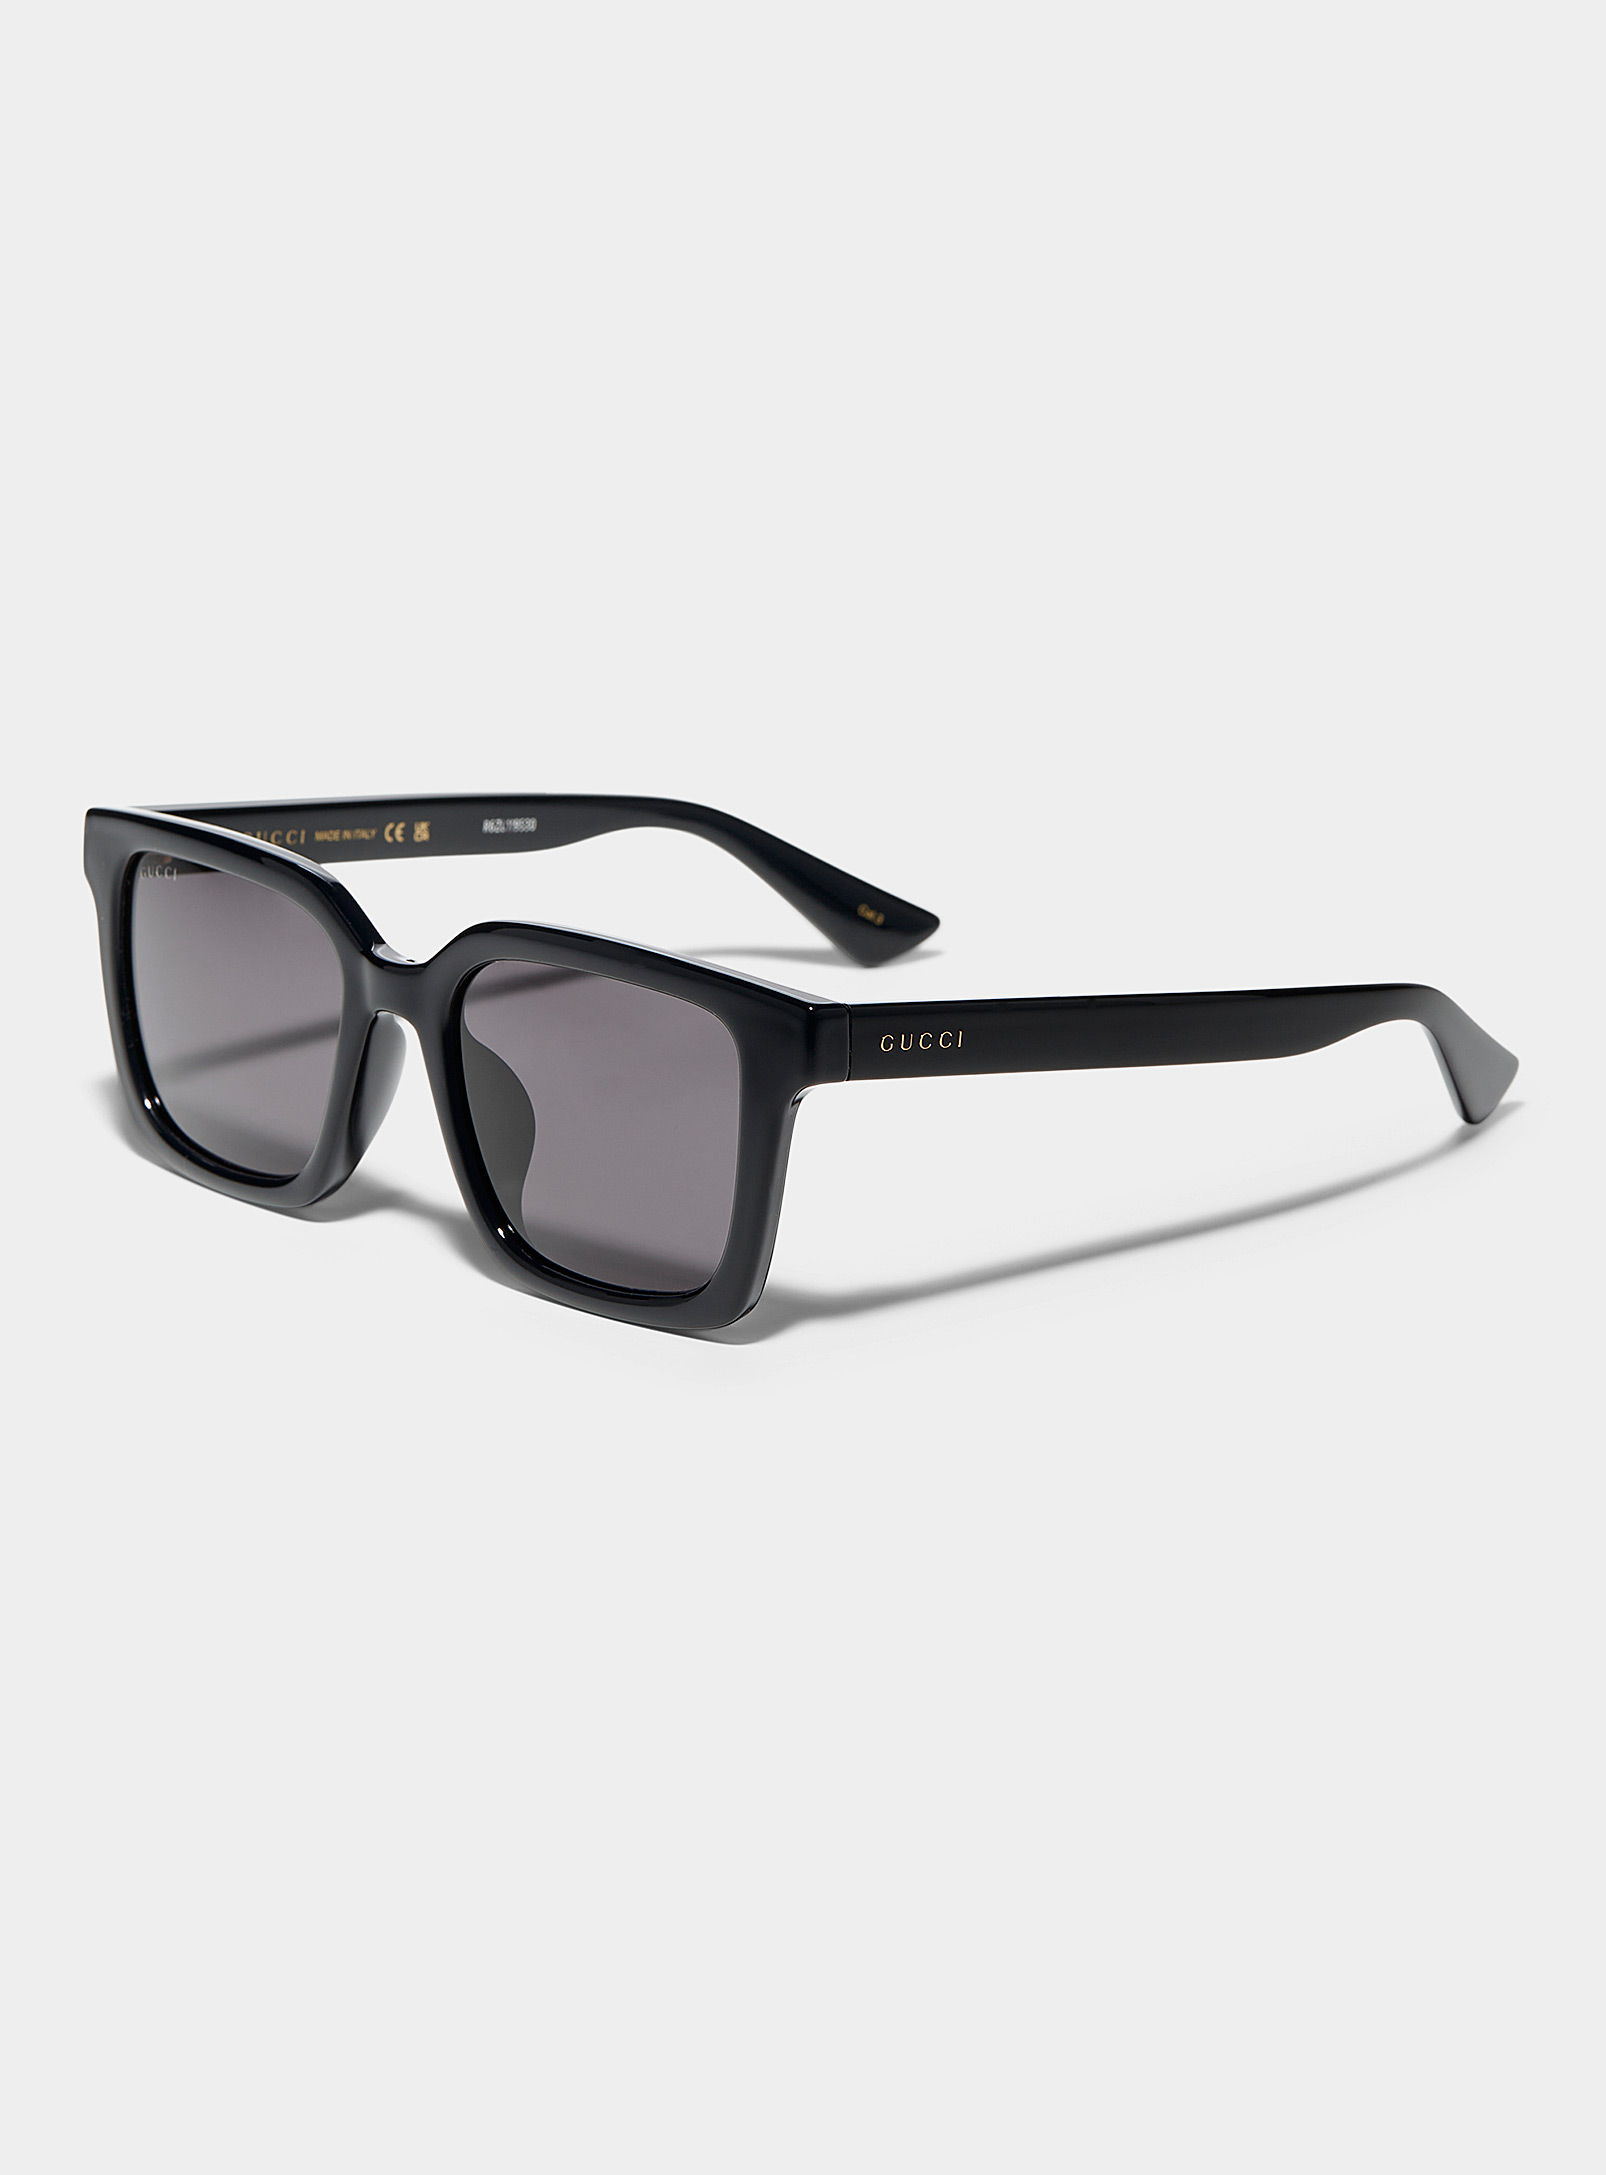 Gucci Monochrome Square Sunglasses In Black